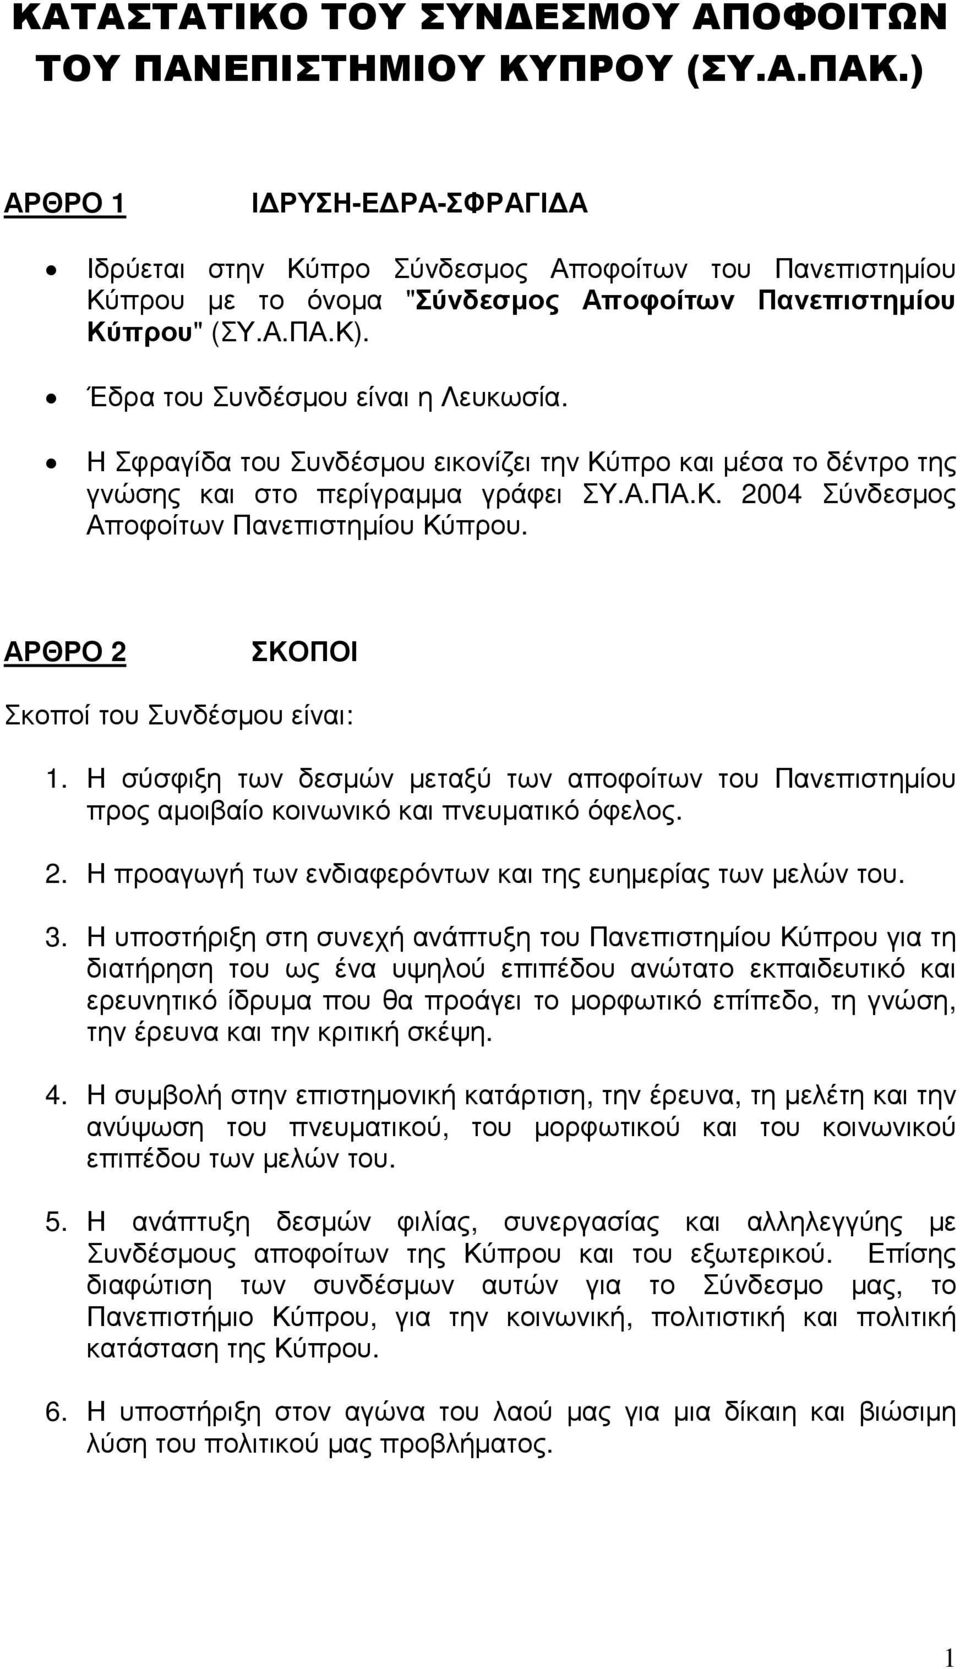 Η Σφραγίδα του Συνδέσµου εικονίζει την Κύπρο και µέσα το δέντρο της γνώσης και στο περίγραµµα γράφει ΣΥ.Α.ΠΑ.Κ. 2004 Σύνδεσµος Αποφοίτων Πανεπιστηµίου Κύπρου.